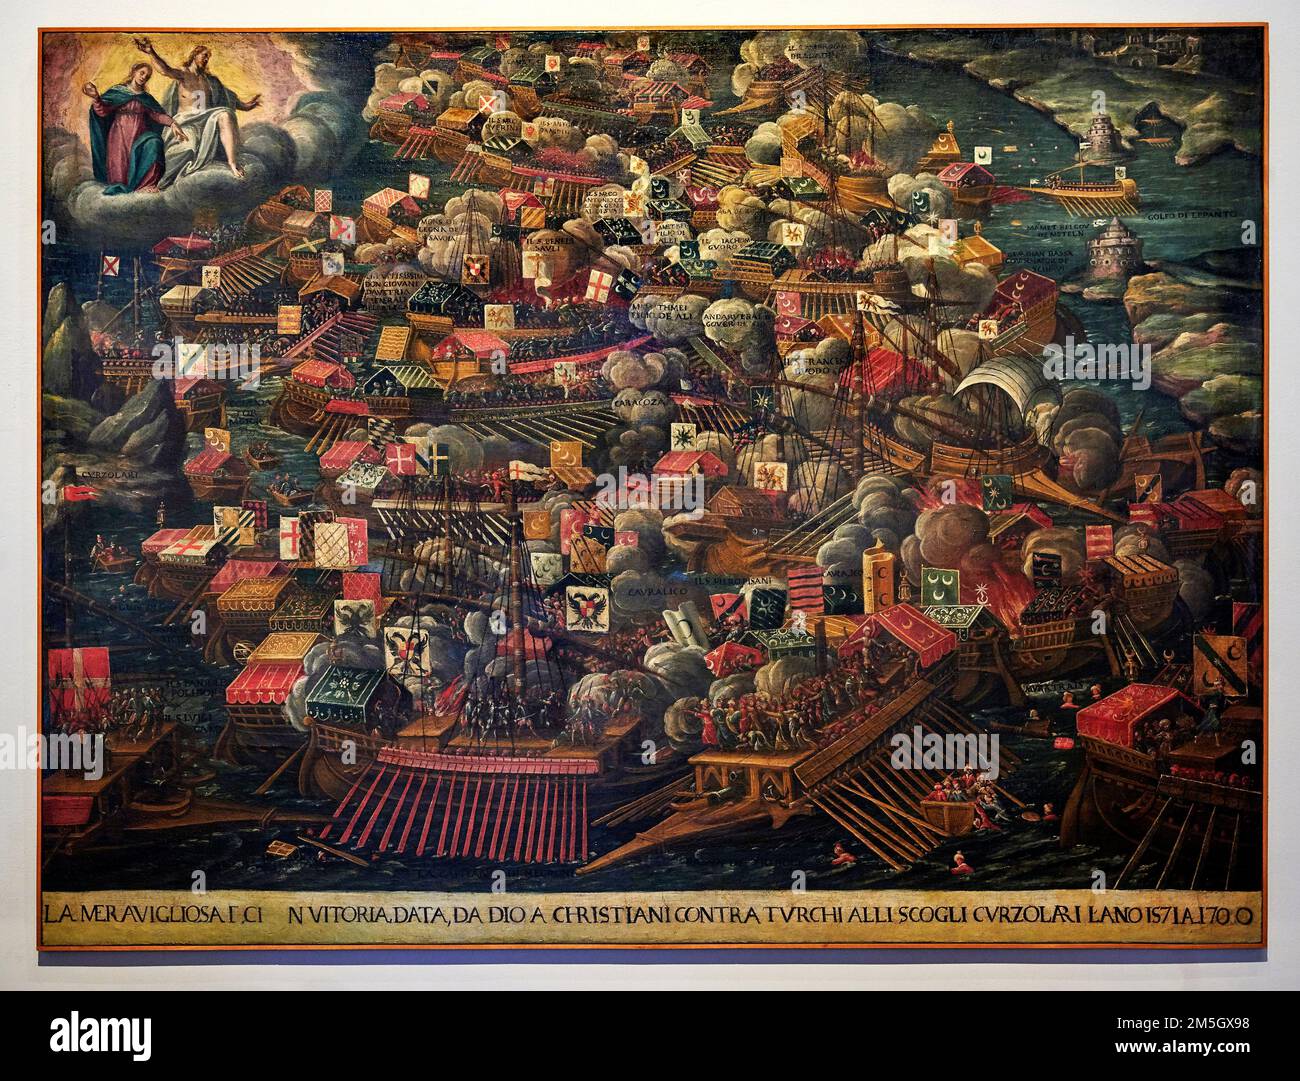 La battaglia di Lepanto - olio su tela - pittore veneto dell’ultimo quarto del XVI secolo  - Venezia, Museo Correr Stock Photo